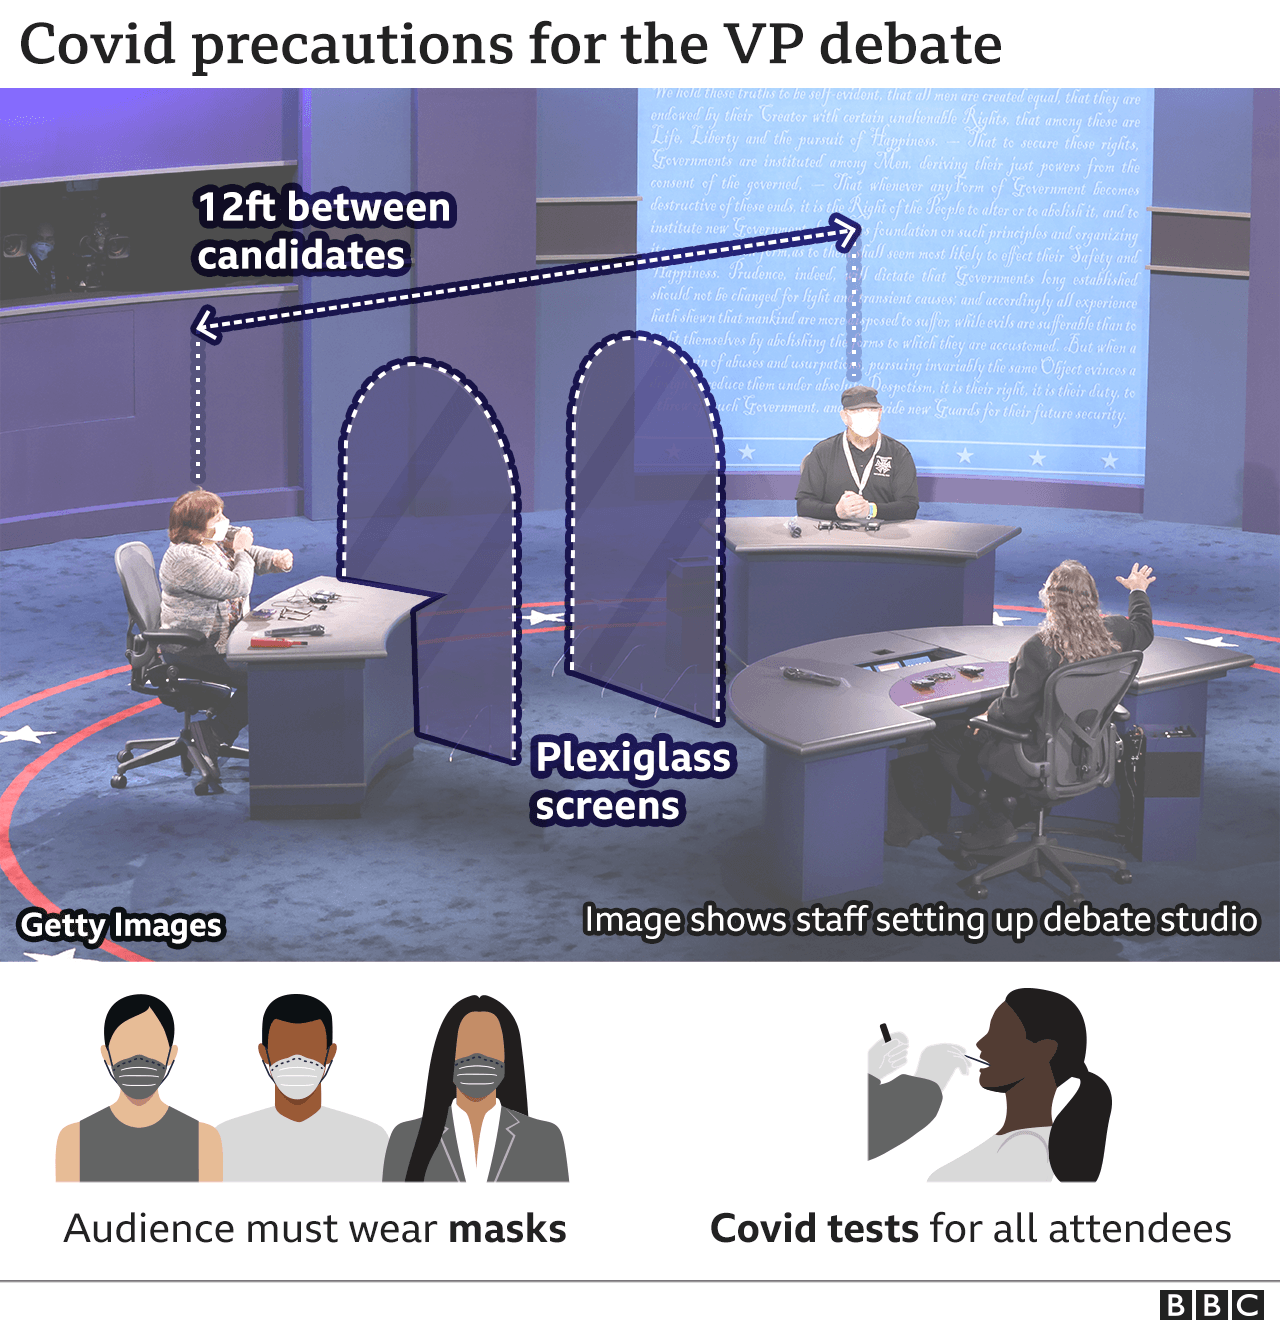 Изображение сцены, показывающей стеклянную перегородку между кандидатами, когда персонал устраивает дебаты